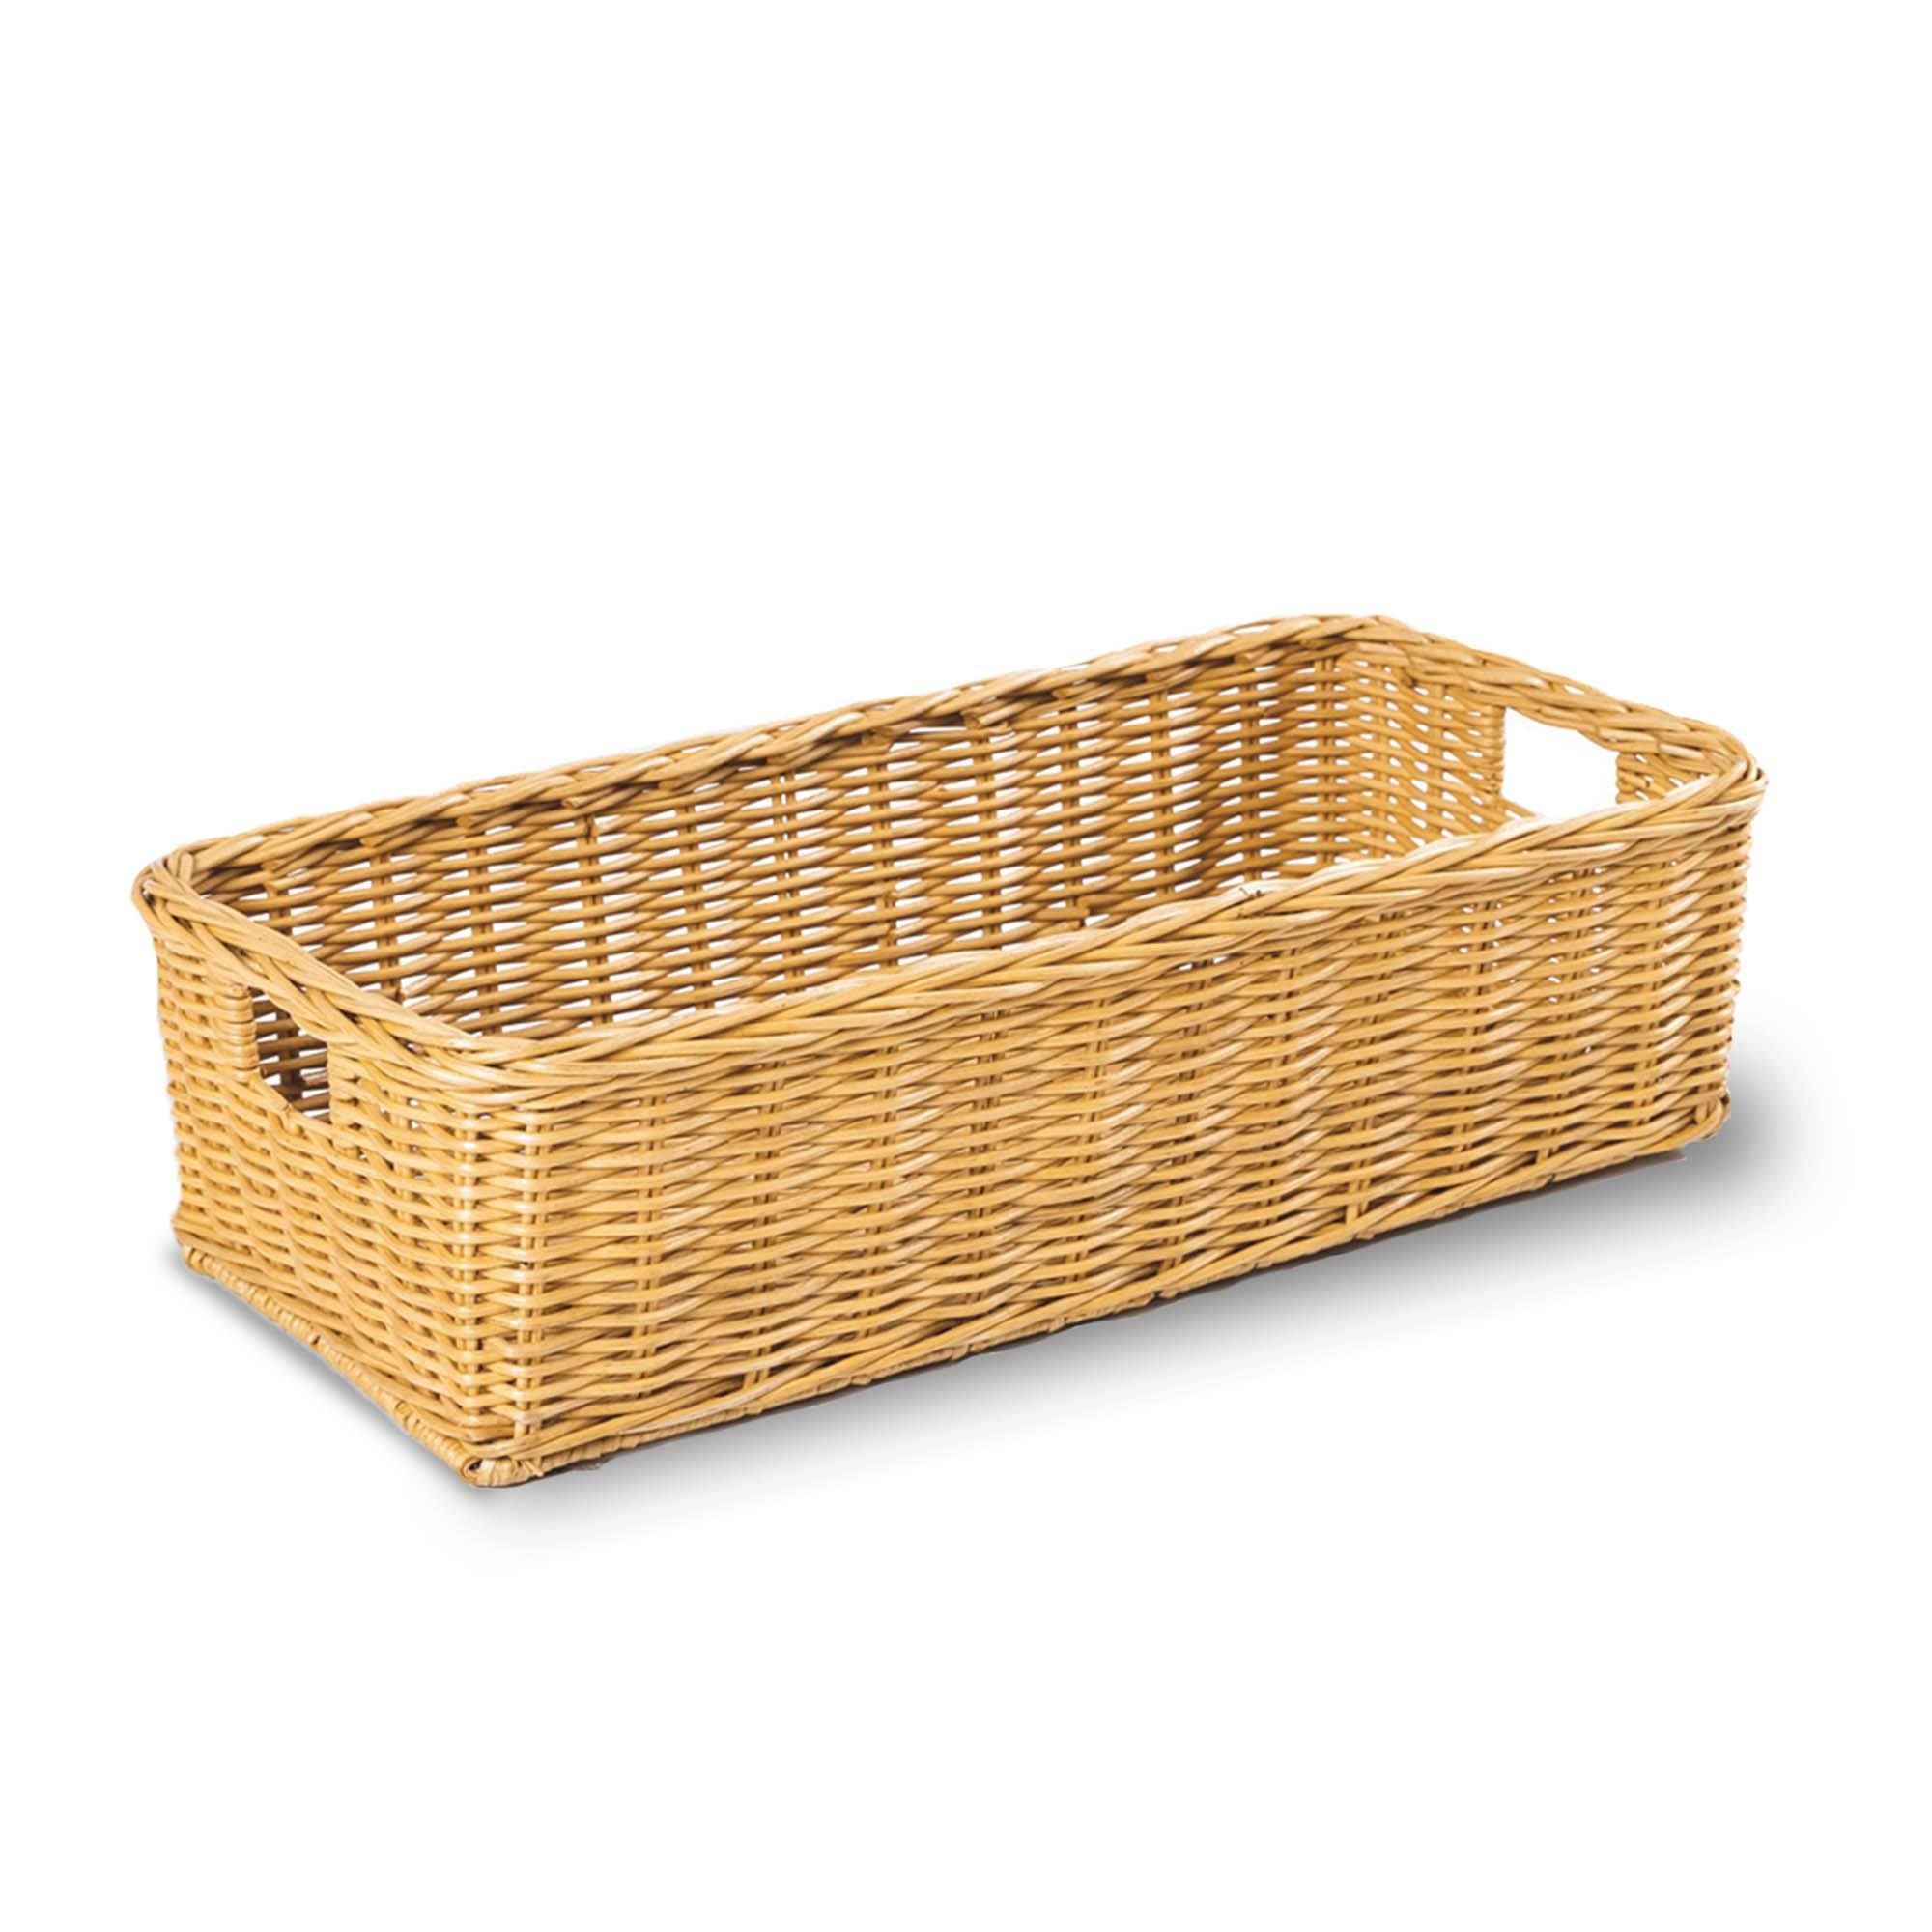 Long Low Wicker Basket - Sandstone - XLarge